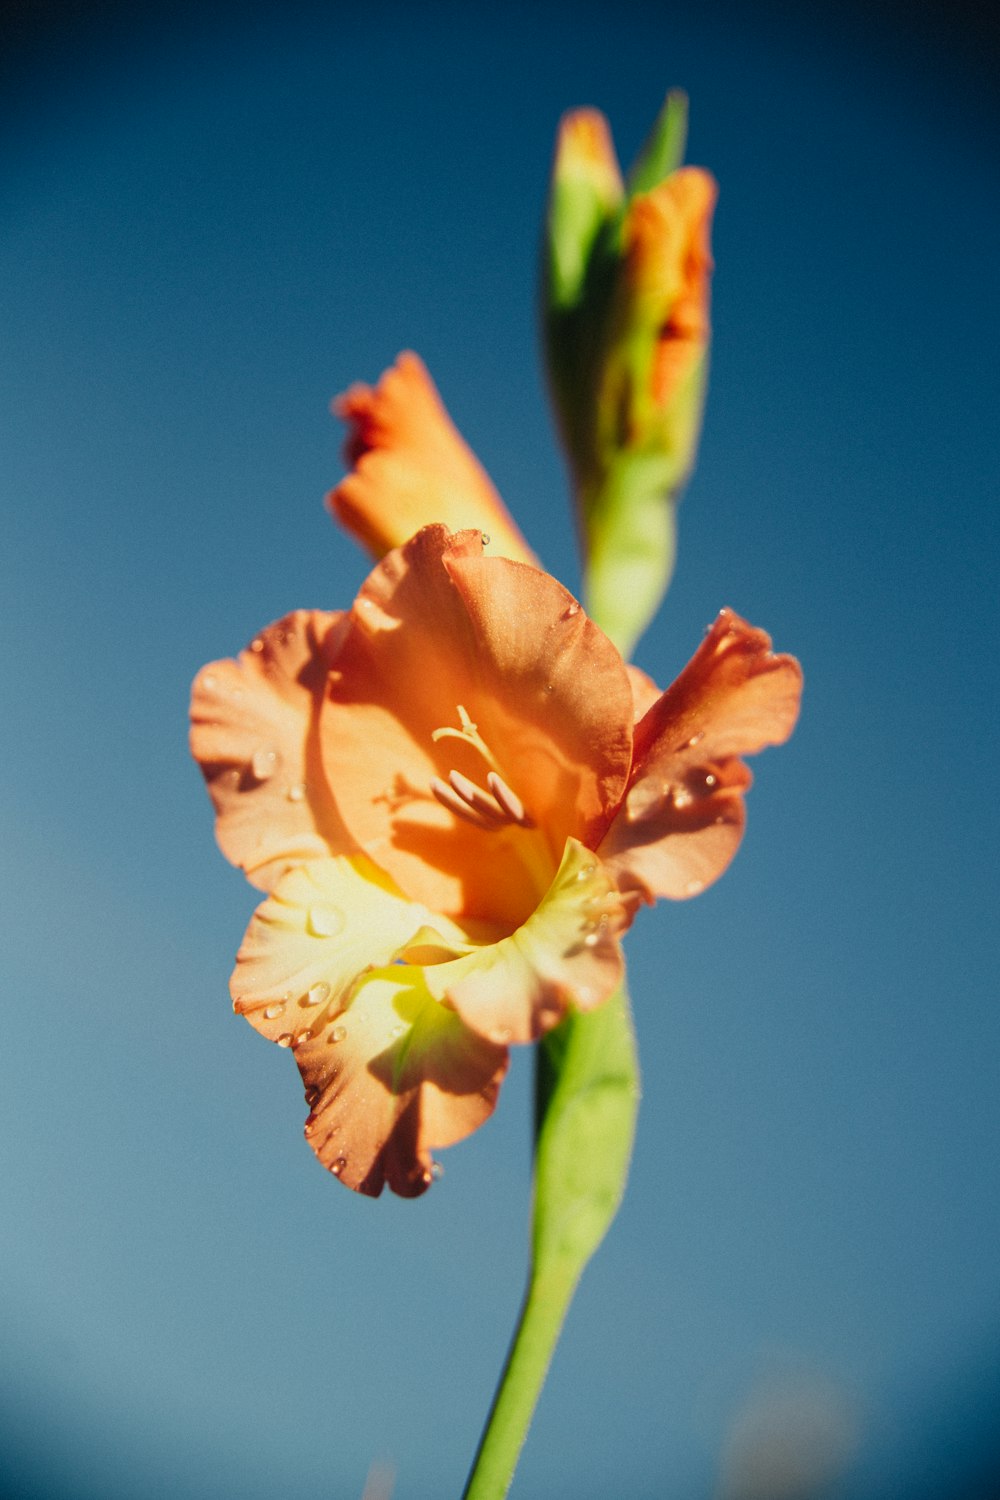 オレンジ色の花のセレクティブフォーカス撮影